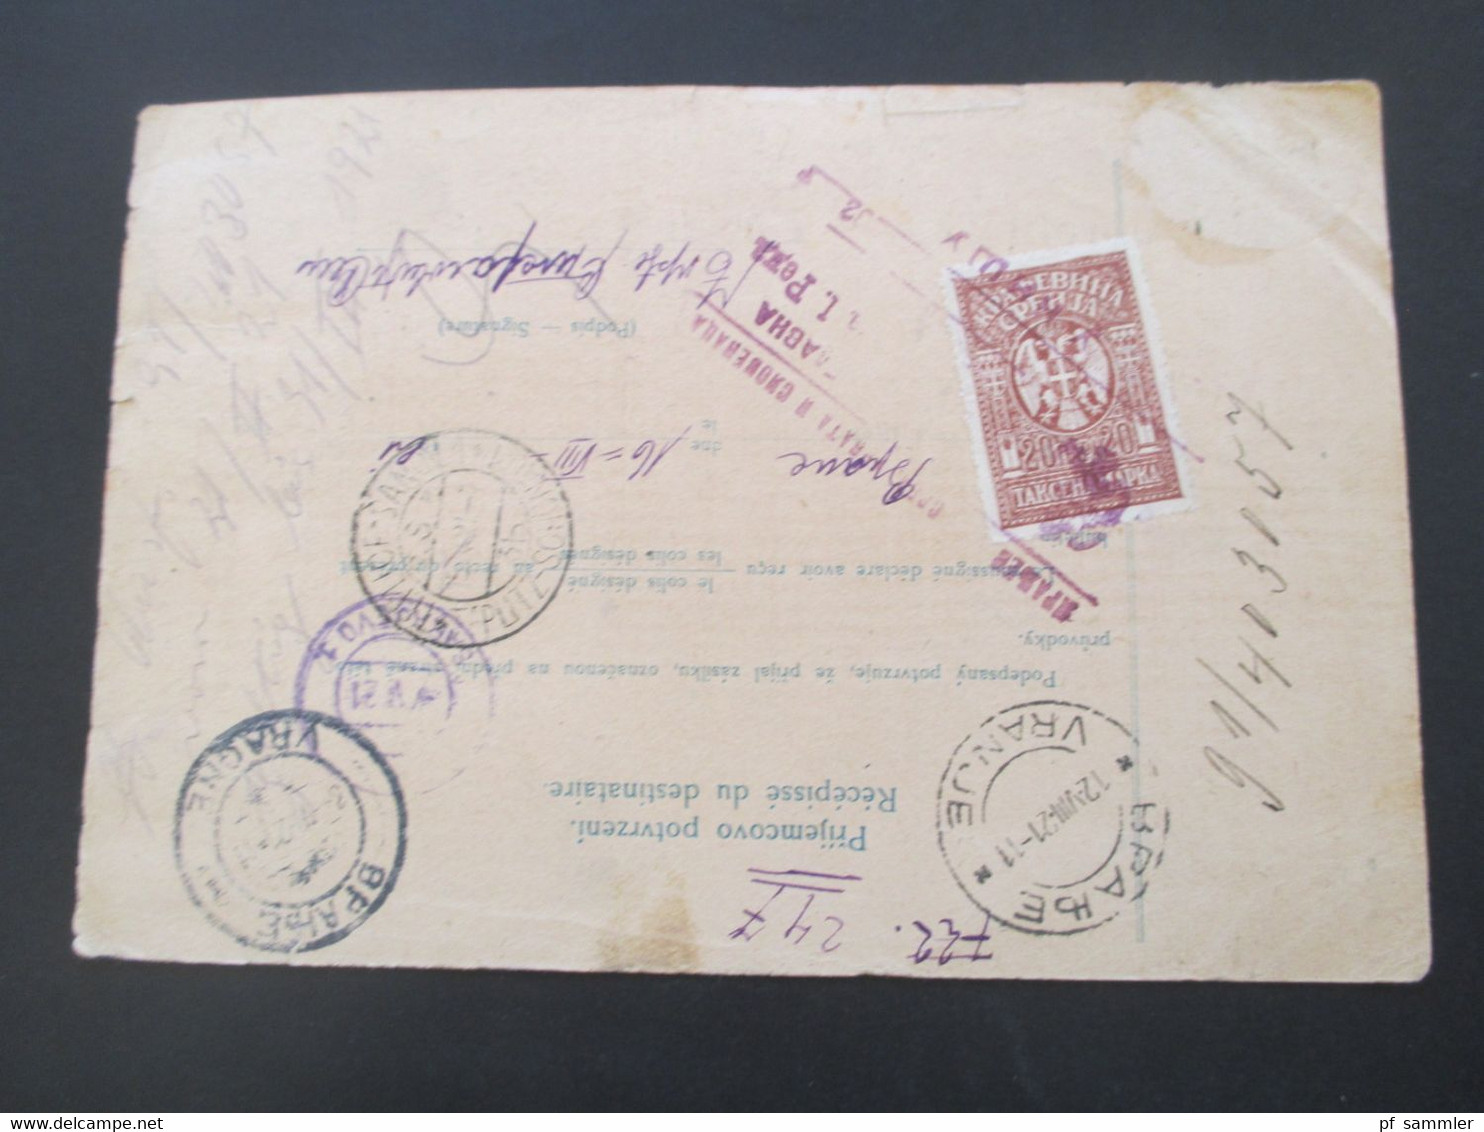 CSSR 1921 Hradschin Mucha Wert - Paketkarte Teplice Teplitz Schönau Sudetenland - Vranja mit Steuermarke und vielen Stp.